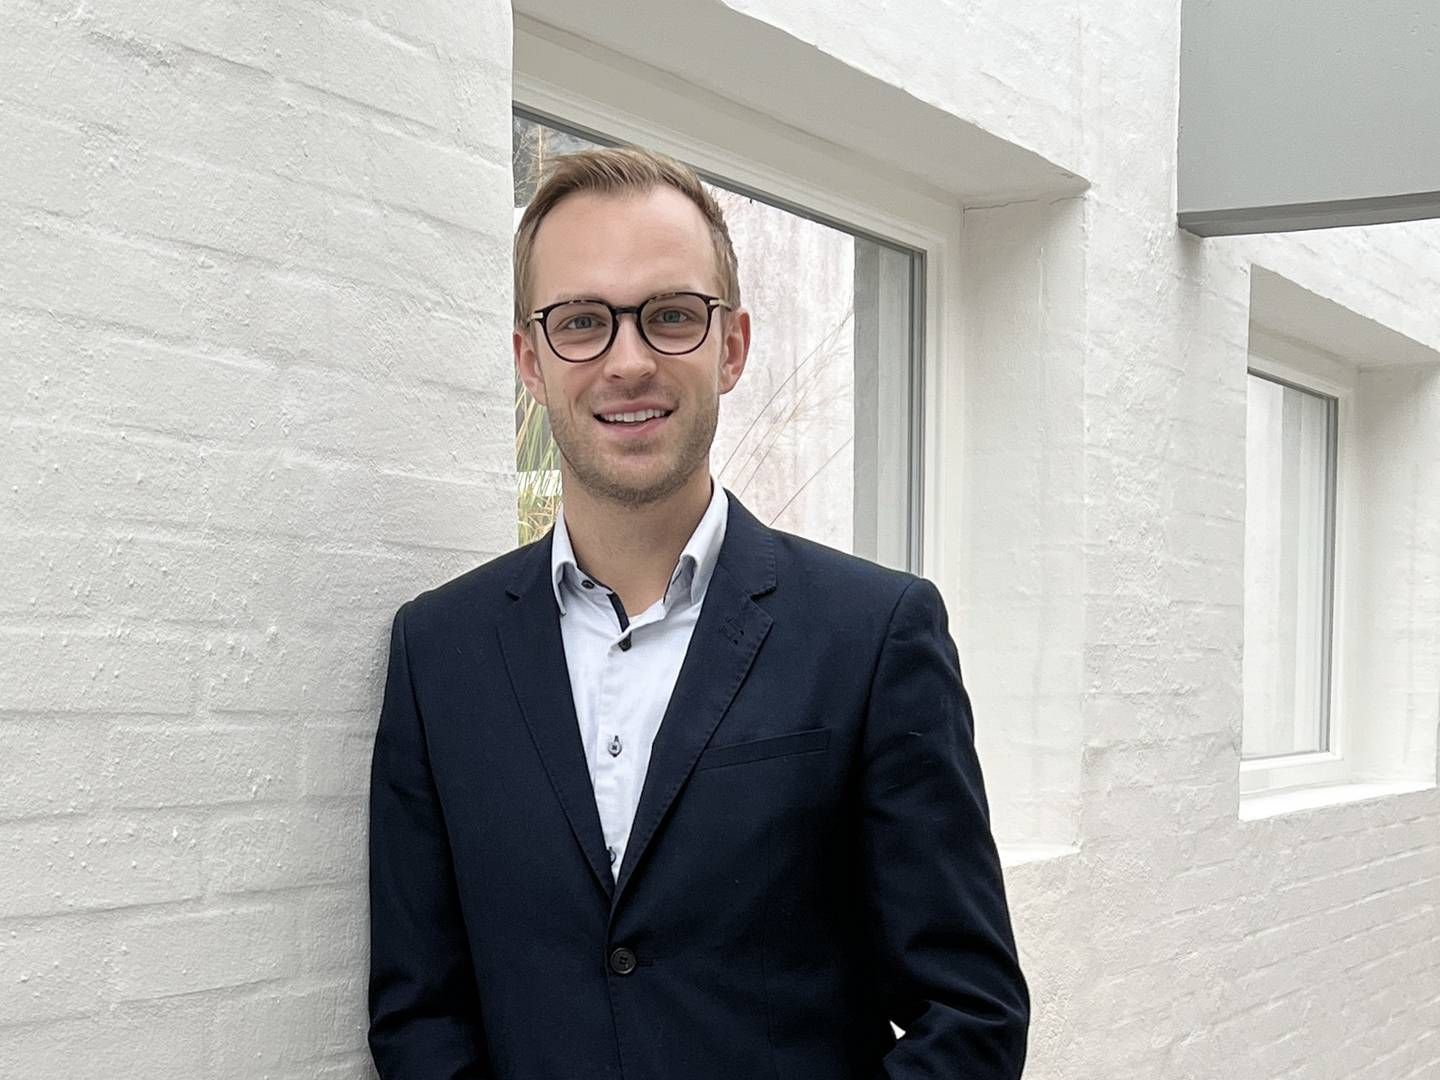 30-årige Mathias Poulsen kommer med seks års erhvervserfaring hos teknologivirksomheden Kamstrup. | Foto: Wavin/PR